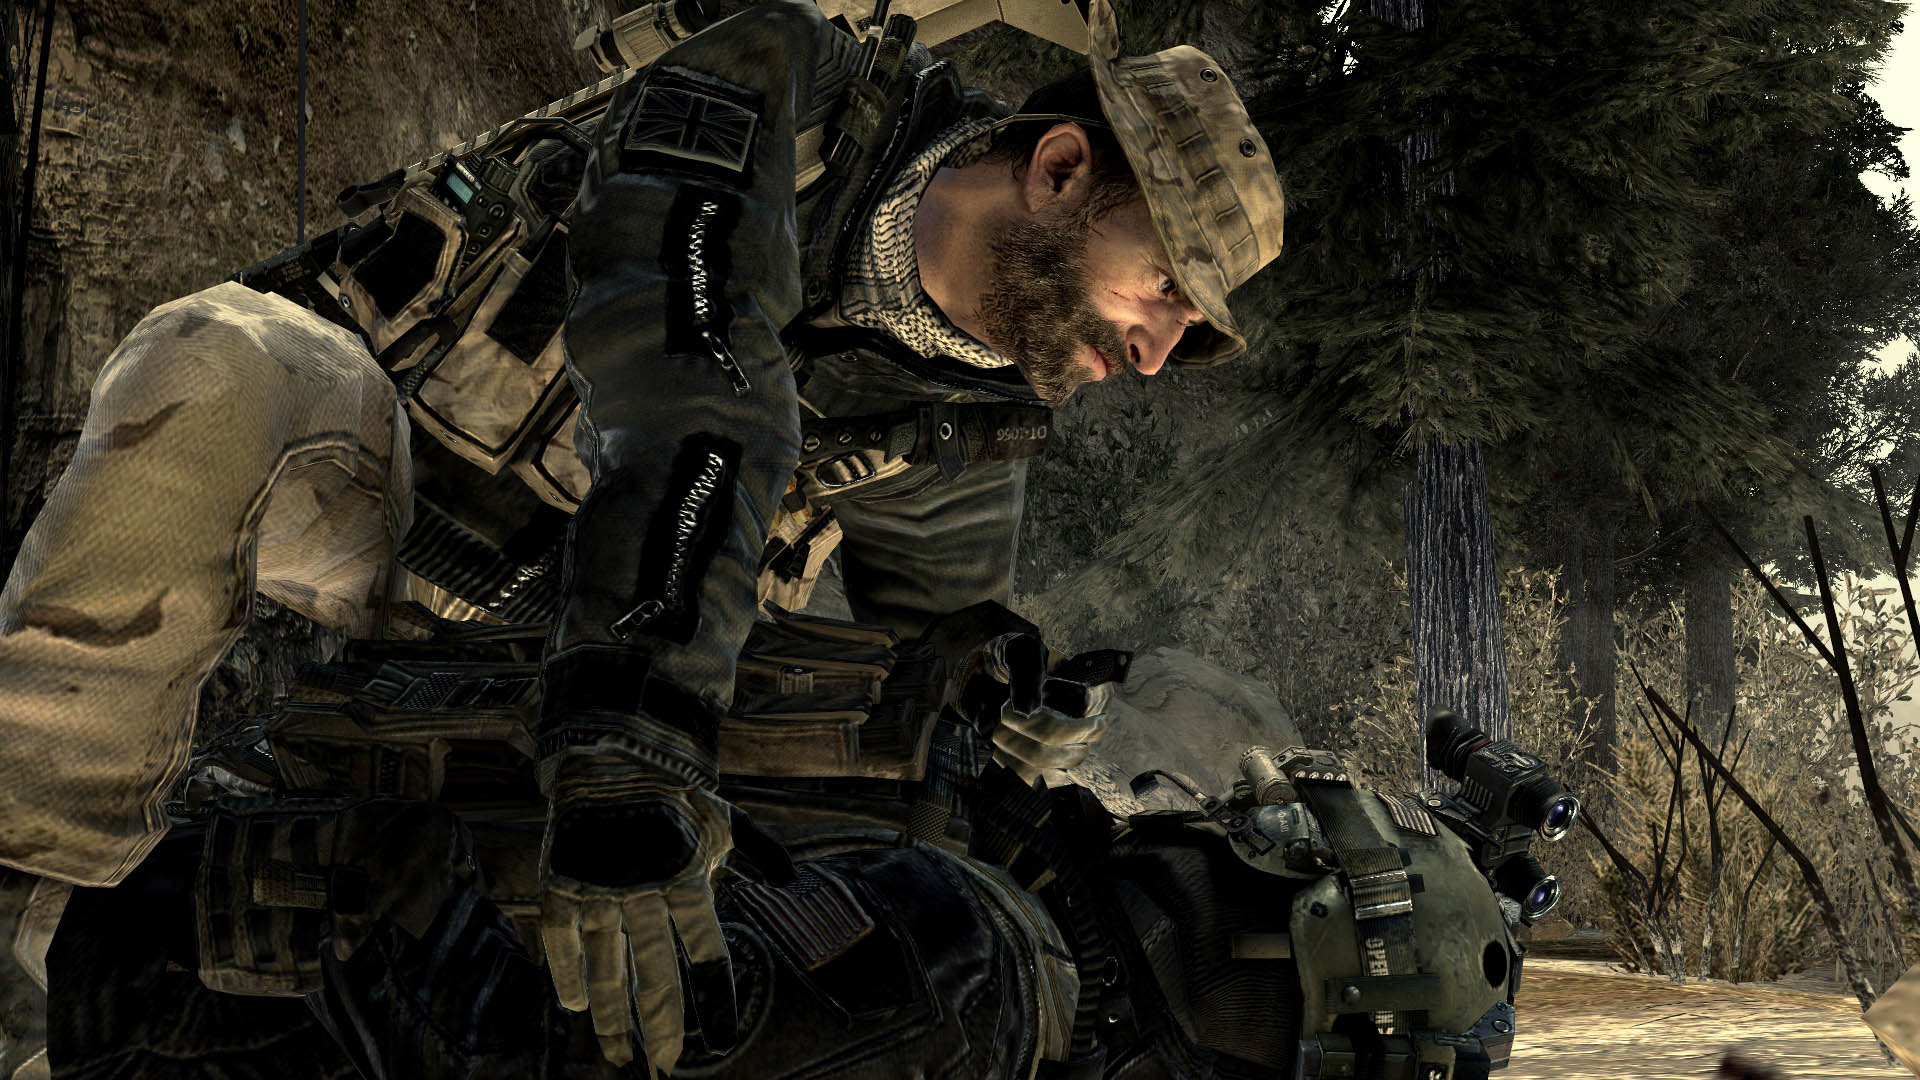 ÙØªÙØ¬Ø© Ø¨Ø­Ø« Ø§ÙØµÙØ± Ø¹Ù âªCall of Duty: Modern Warfare 3â¬â